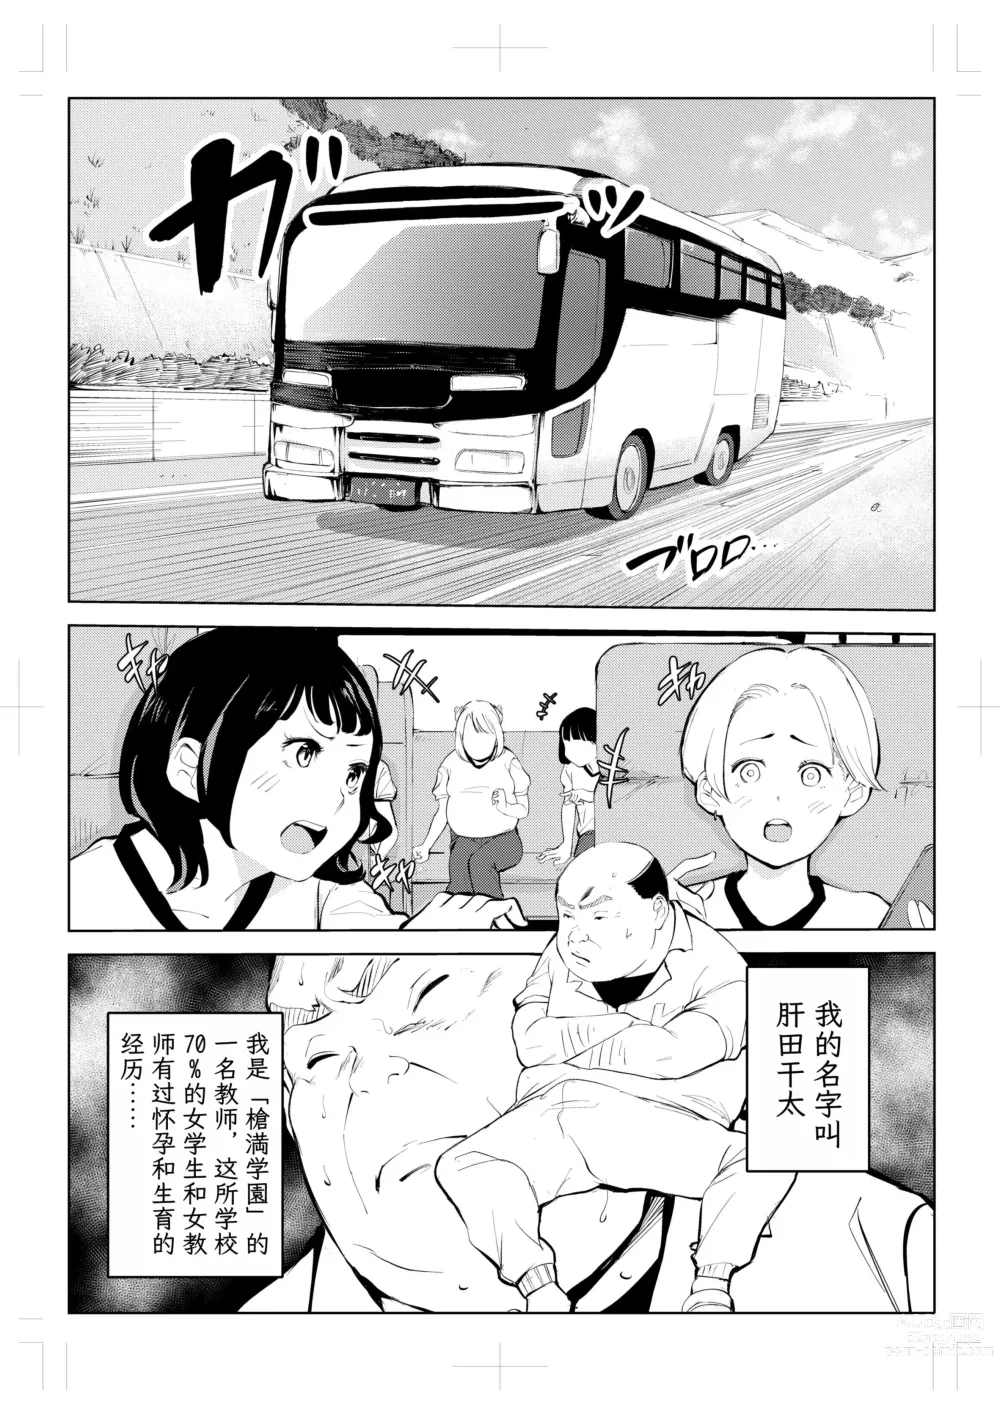 Page 3 of doujinshi 40-sai no Mahoutsukai 4